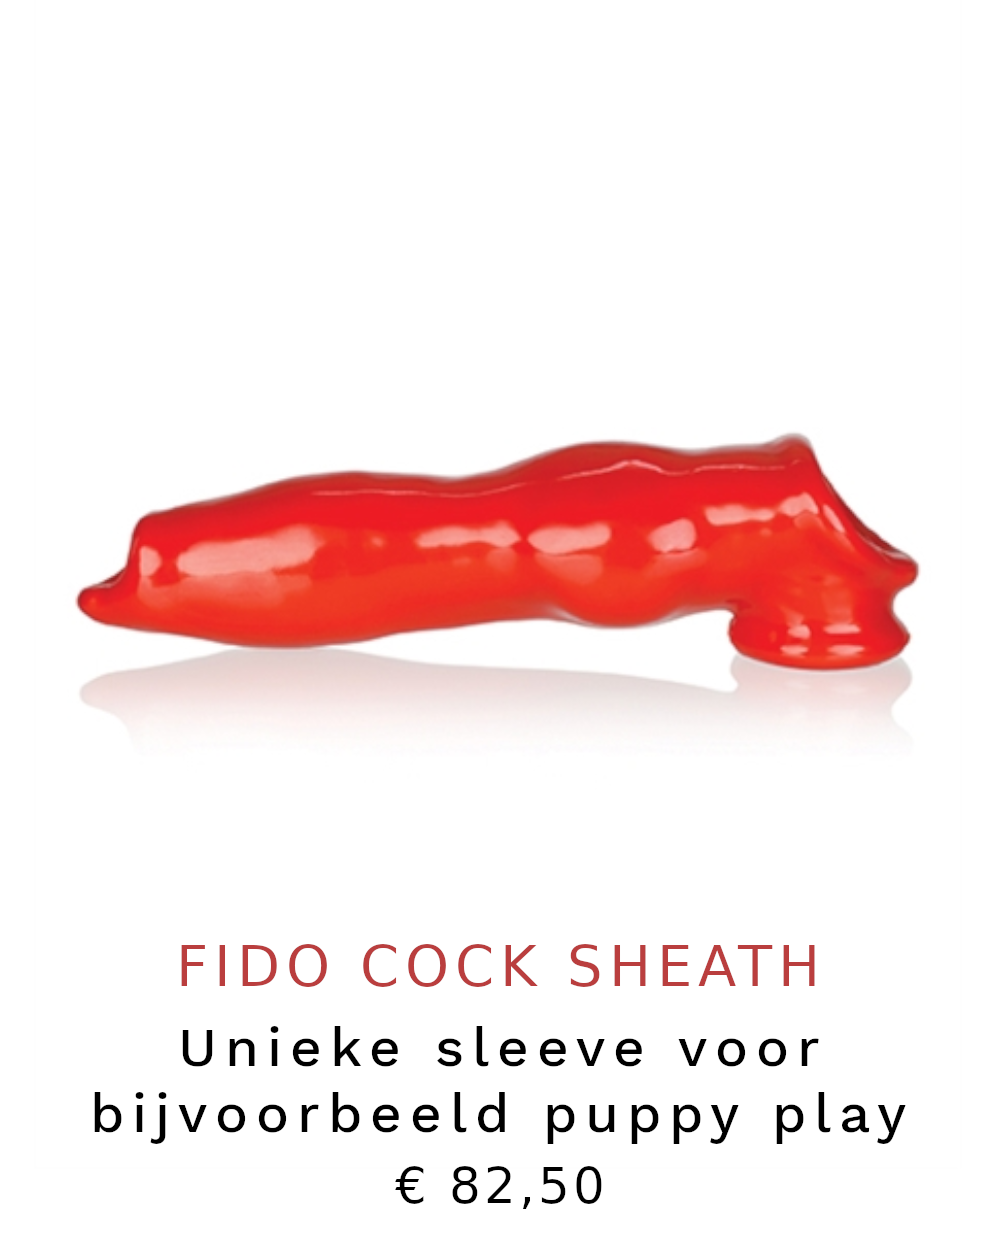 Fido cock sheath